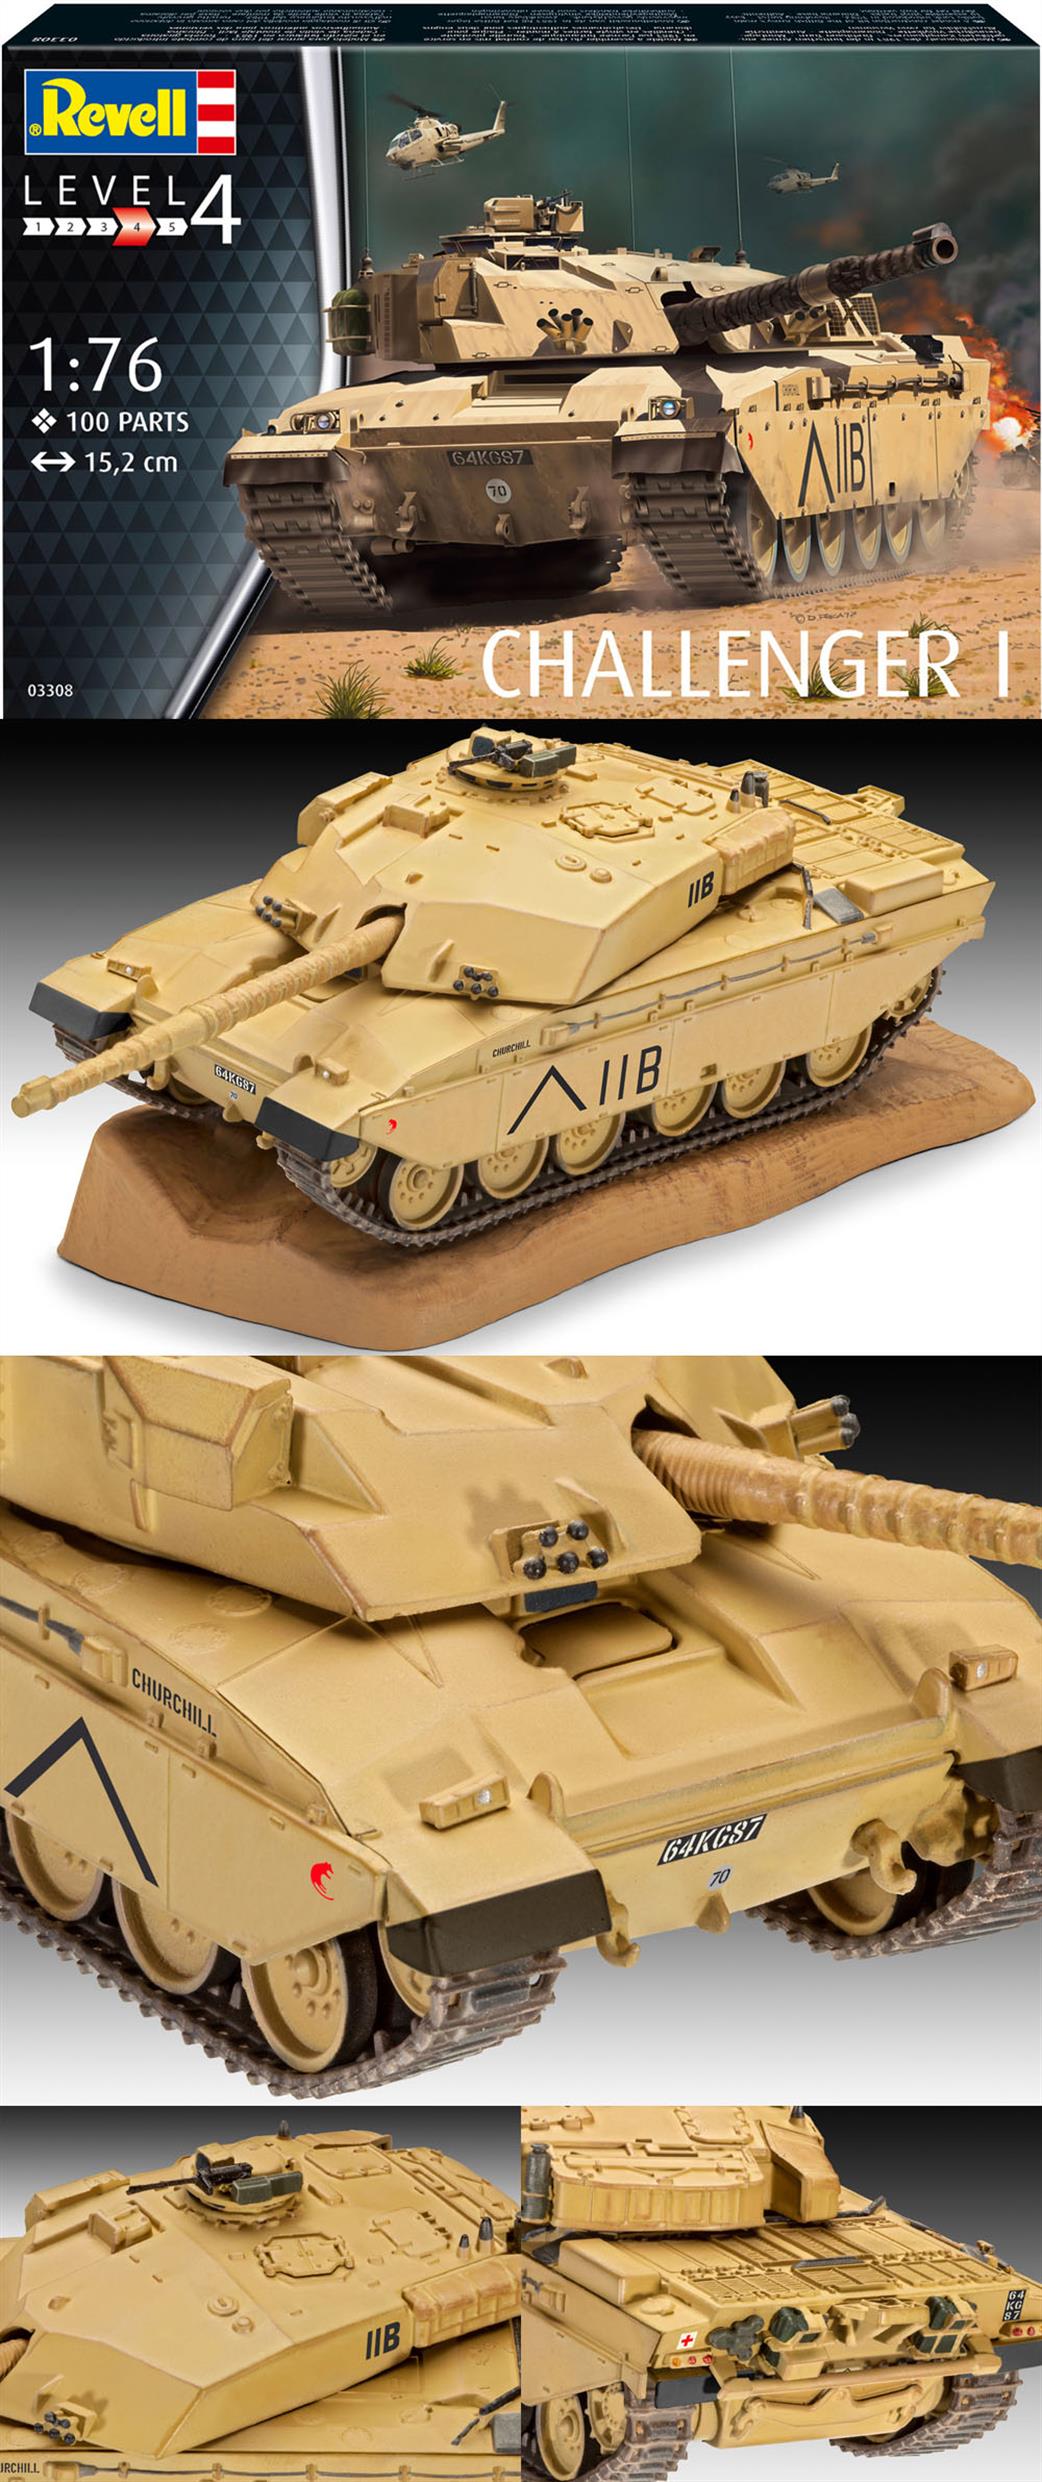 Revell 1/76 03308 British Challenger I Main Battle Tank Kit